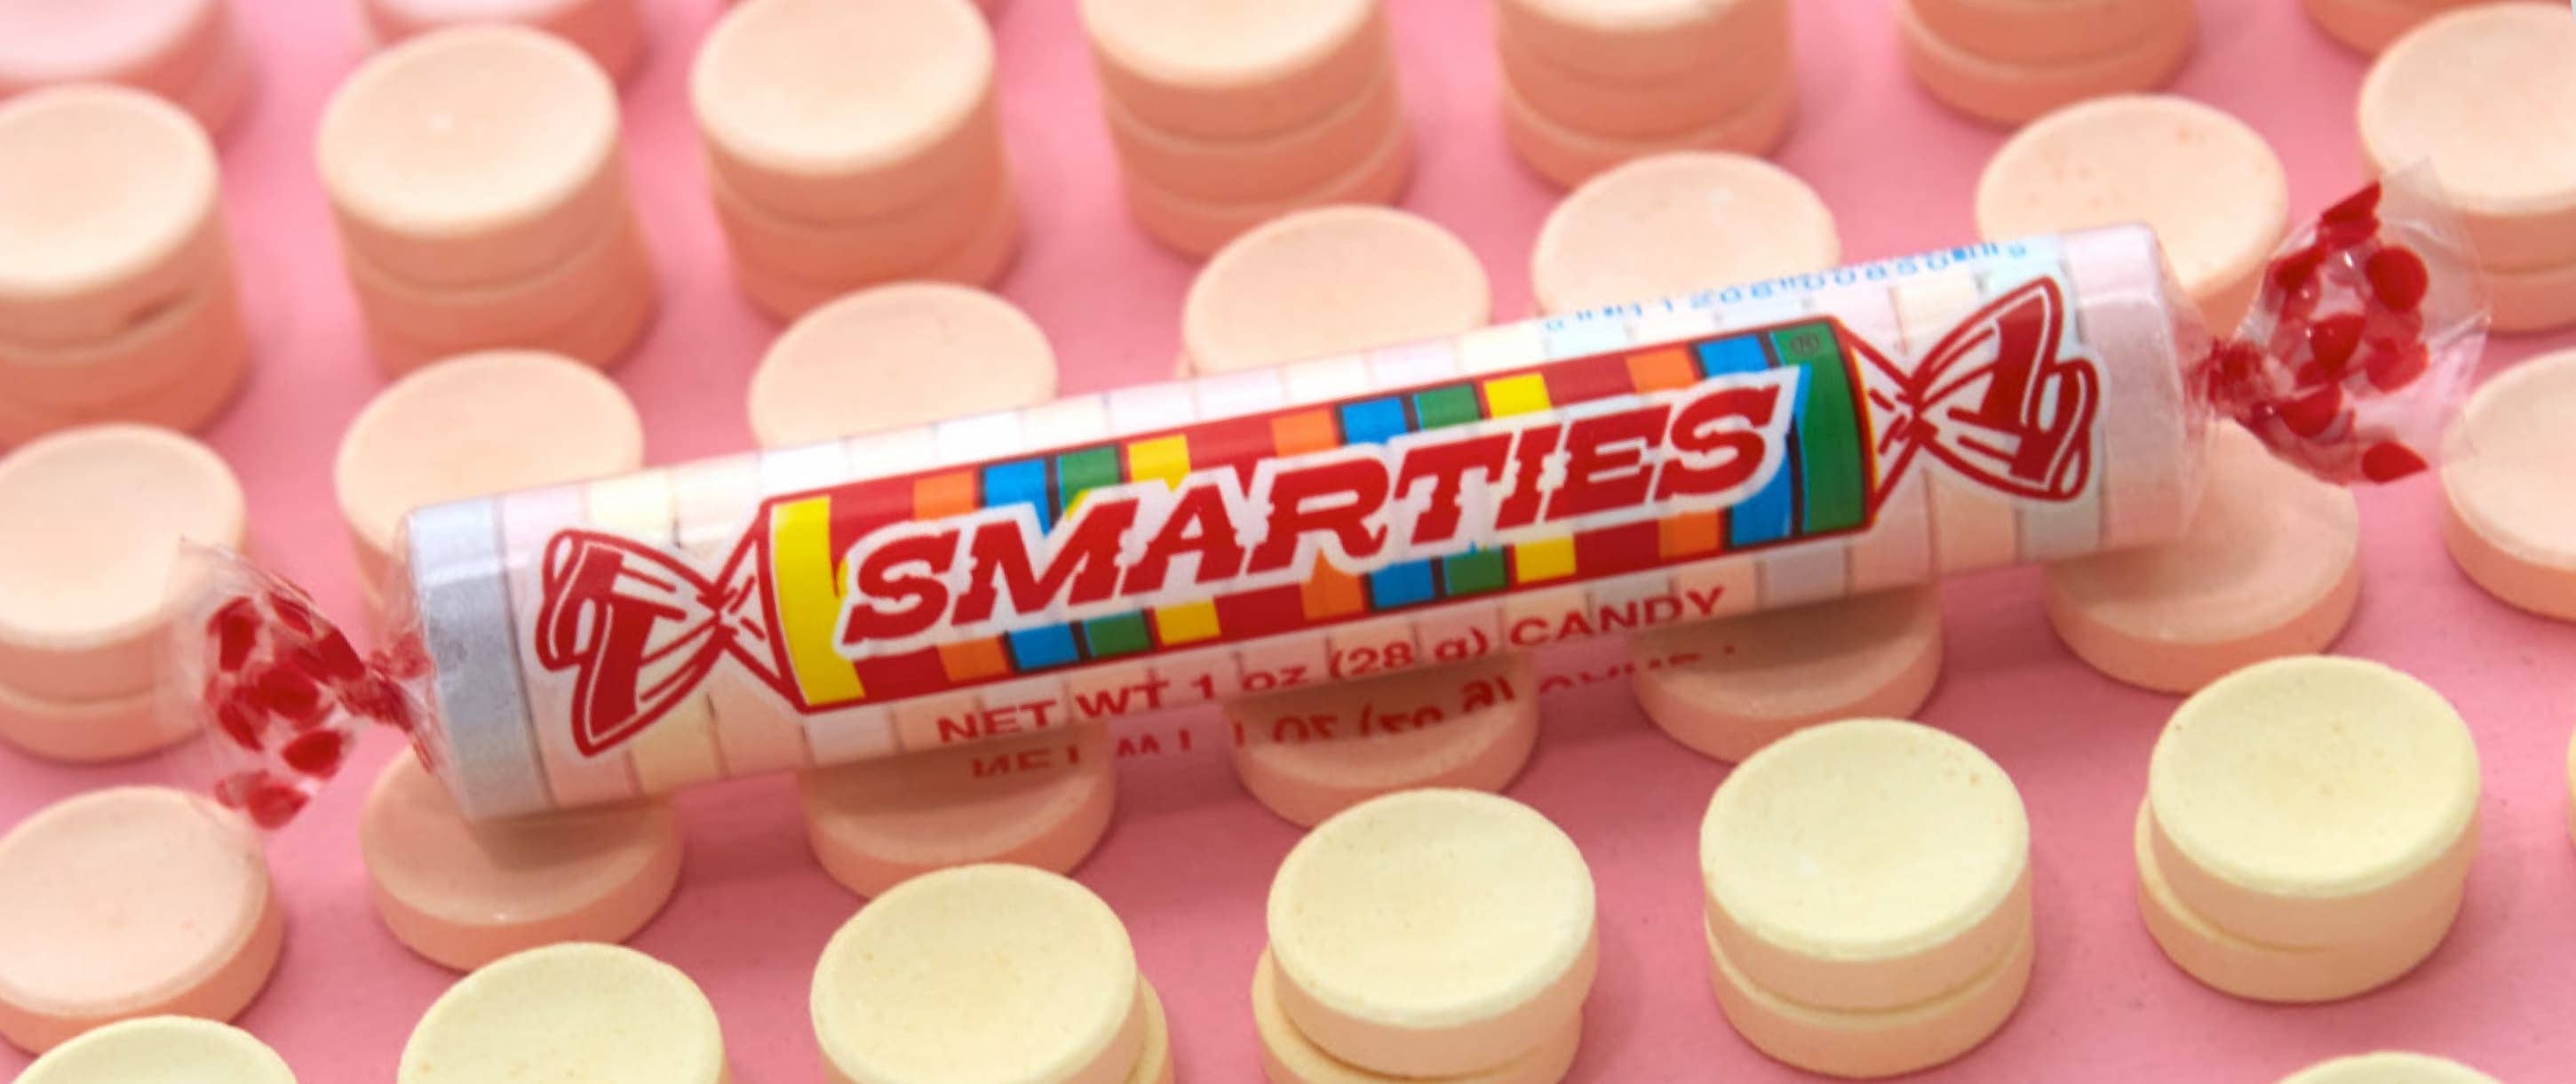 Smarties candy hero